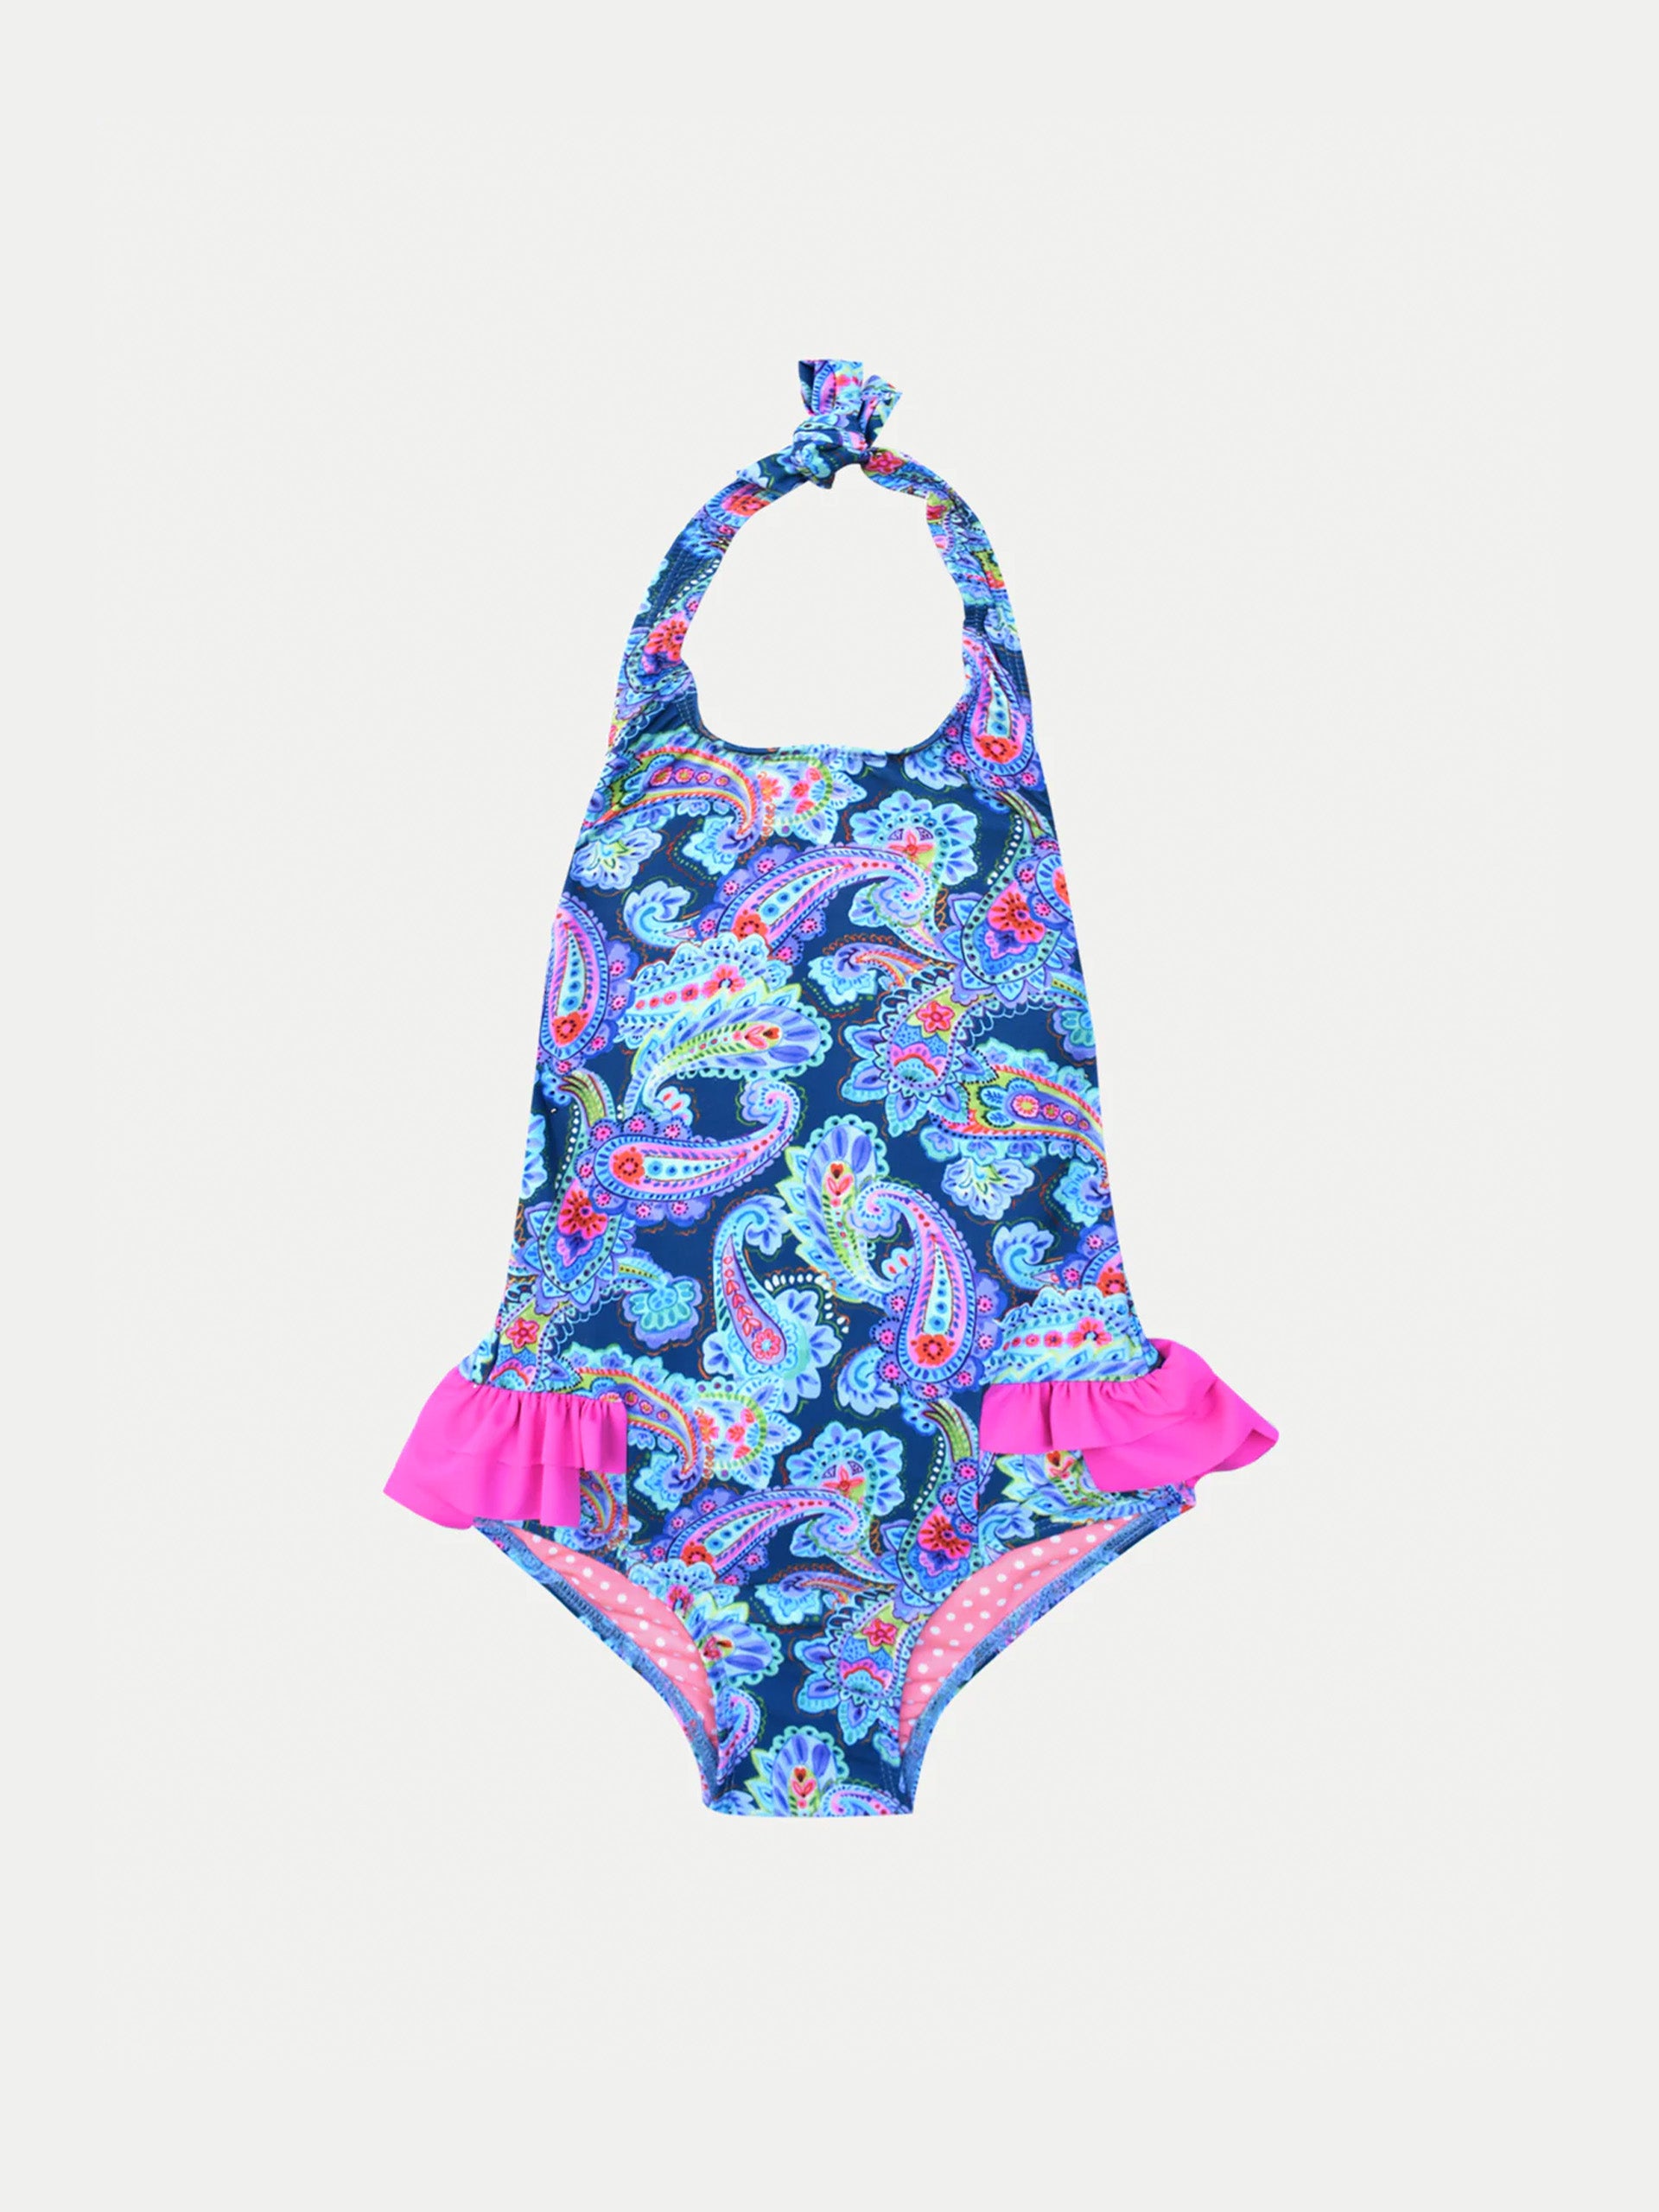 'Neon Waves’ Girls Swimwear by 98 Coast Av.